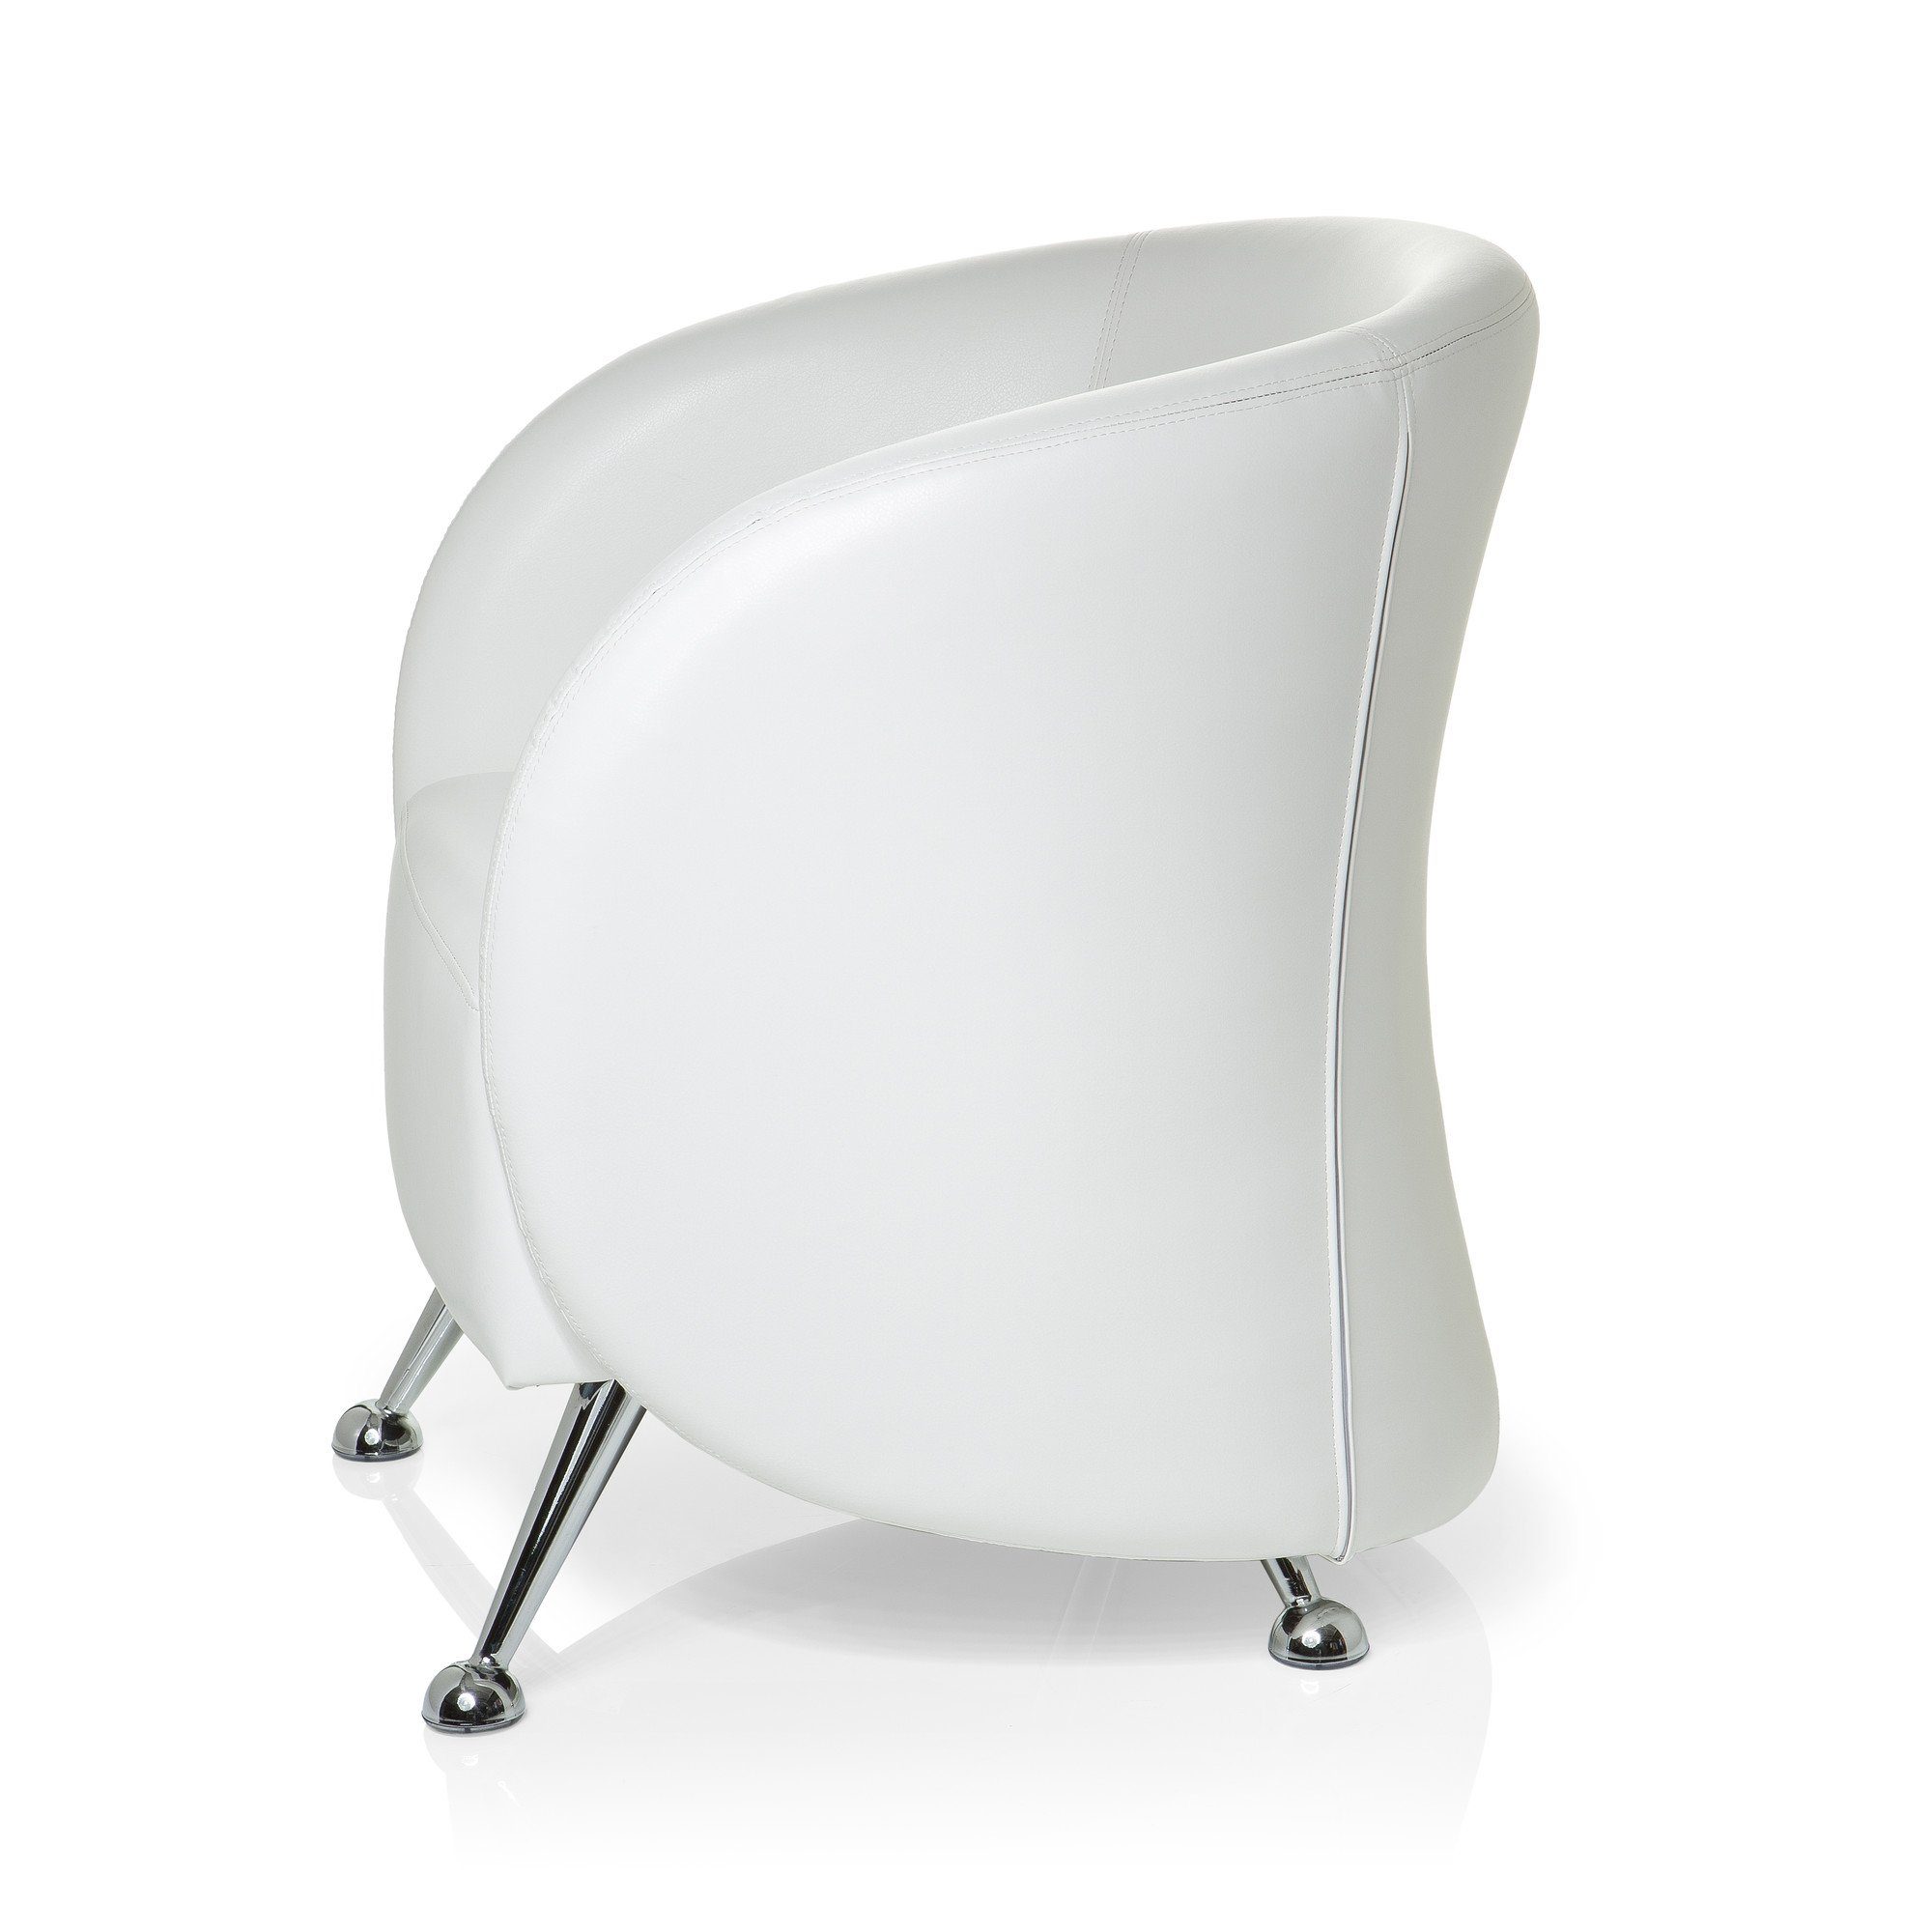 Polstersessel Weiß LUCIA pflegeleicht OFFICE Loungesessel Sessel Kunstleder ST. Weiß mit Armlehnen, hjh |